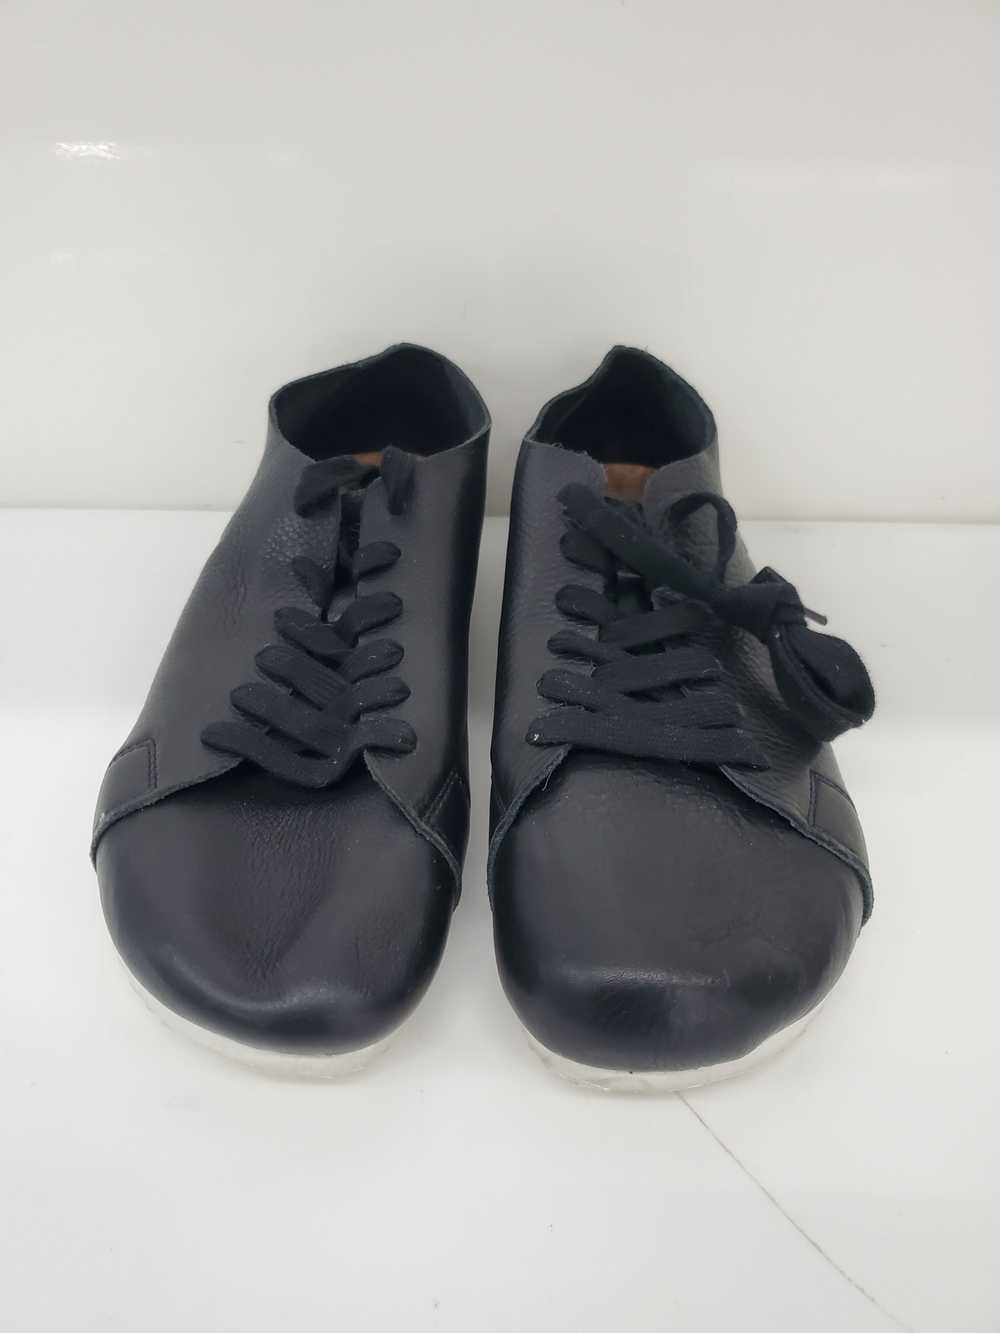 Men otz Shoes Leather Black Shoes Size-10.5 Used - image 1